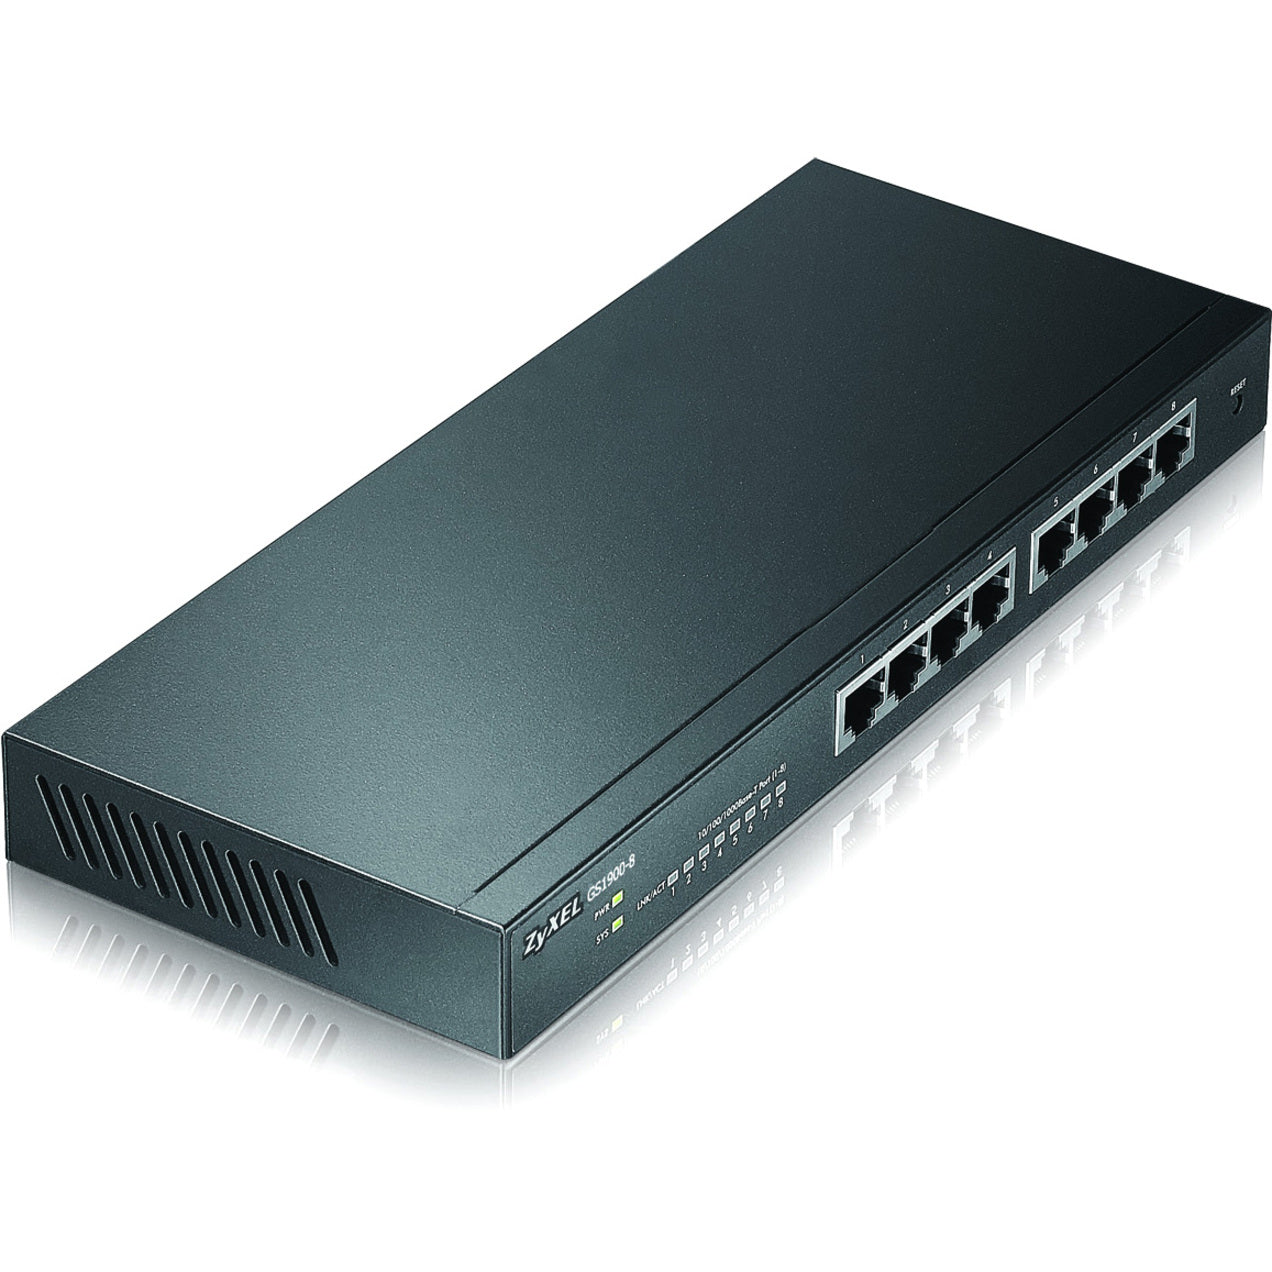 ZYXEL GS1900-8 8-Port GbE Smart Managed Switch, Fanless, Gigabit Ethernet, Lifetime Warranty